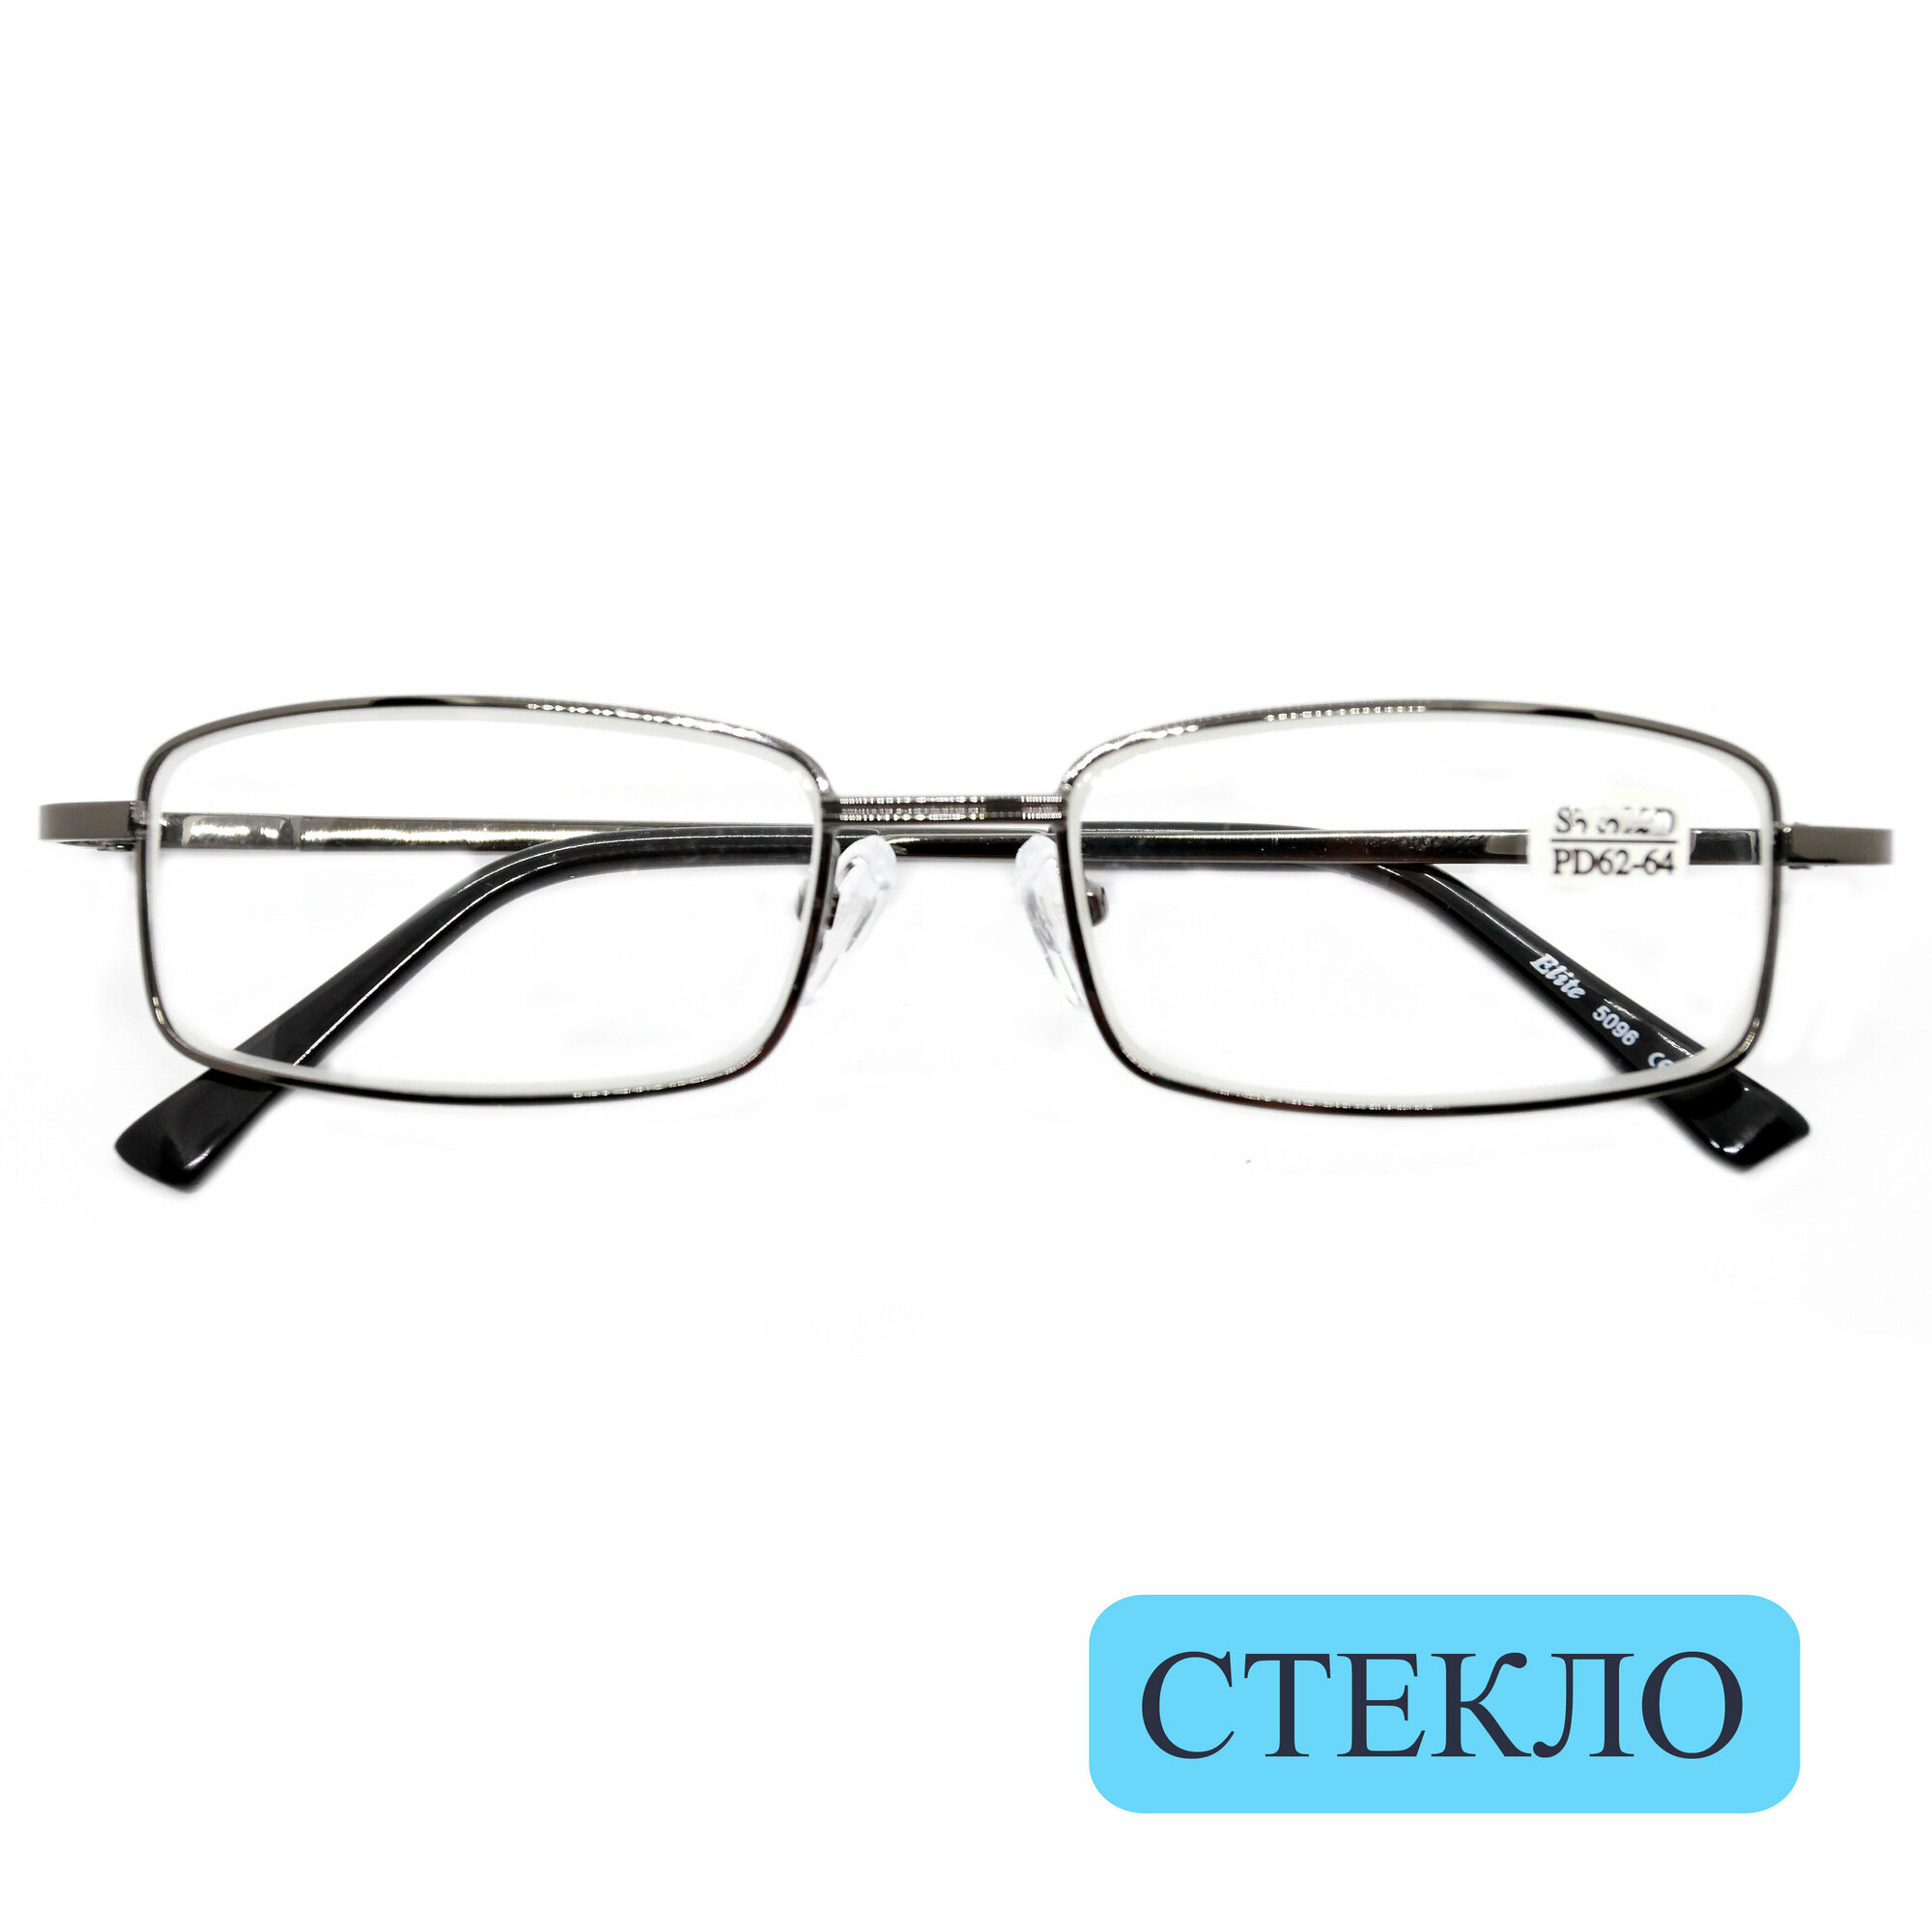 Коррегирующие очки для чтения стекло (+2.00) ELITE 5096 линза стекло цвет серый РЦ62-64 с салфеткой